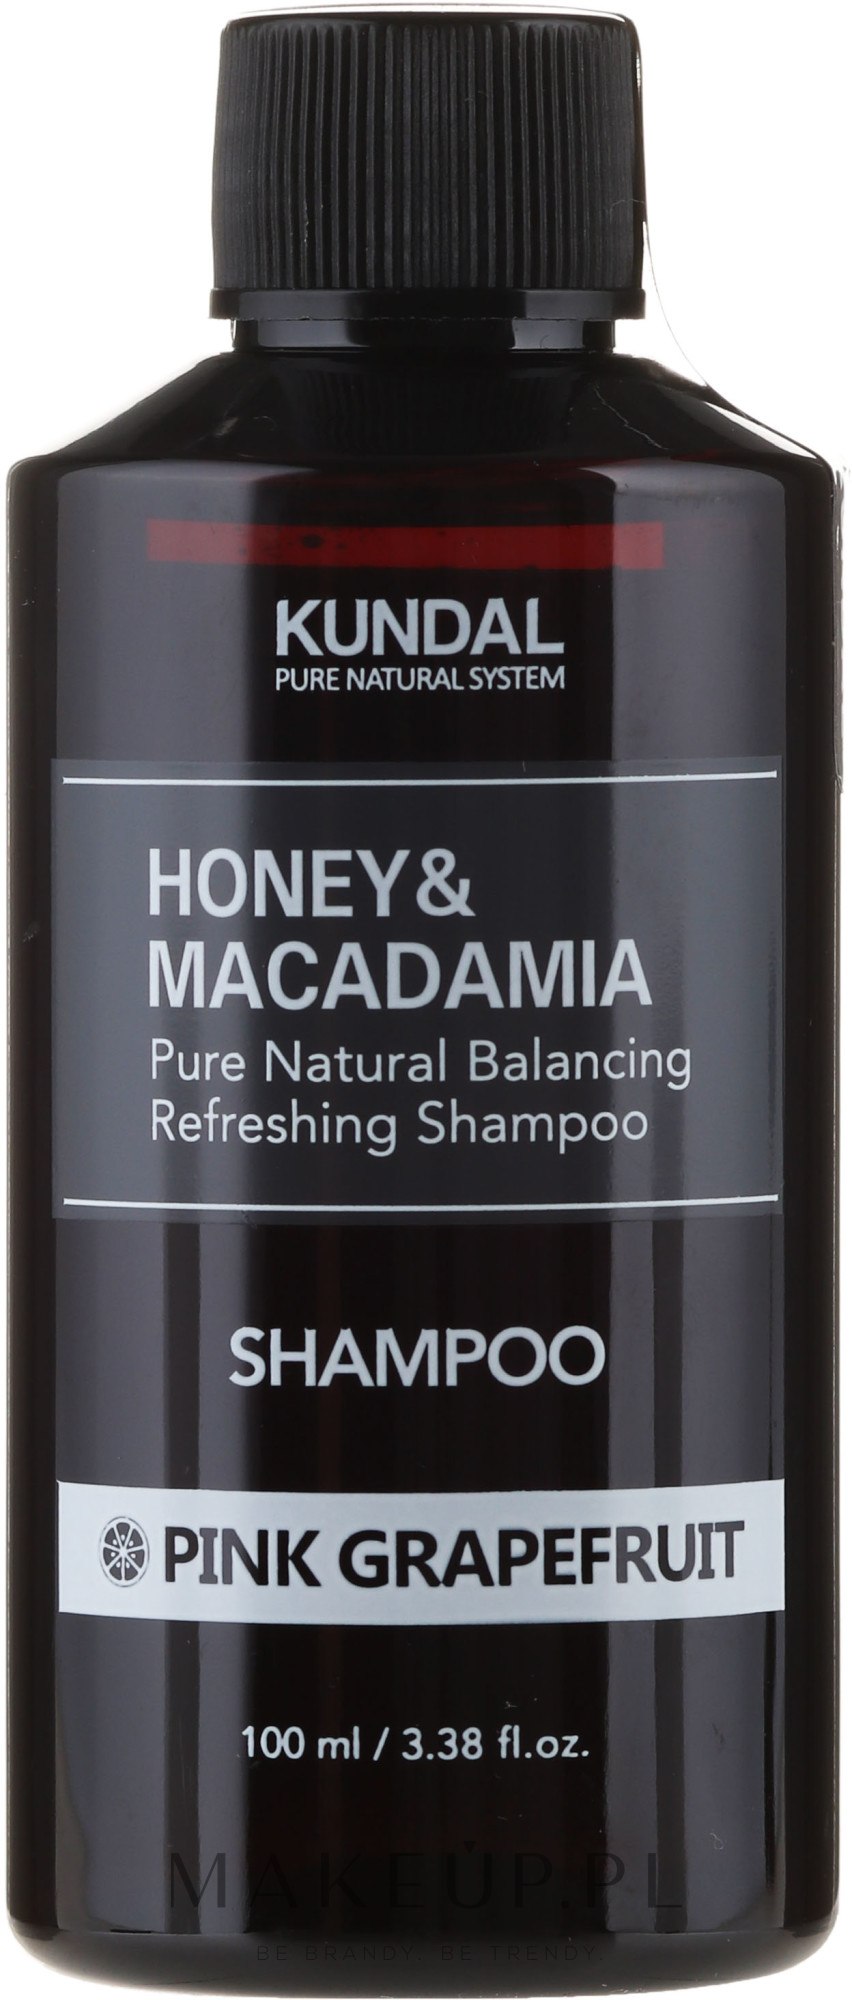 kundal szampon do włosów różowy grejpfrut honey&macadamia shampoo